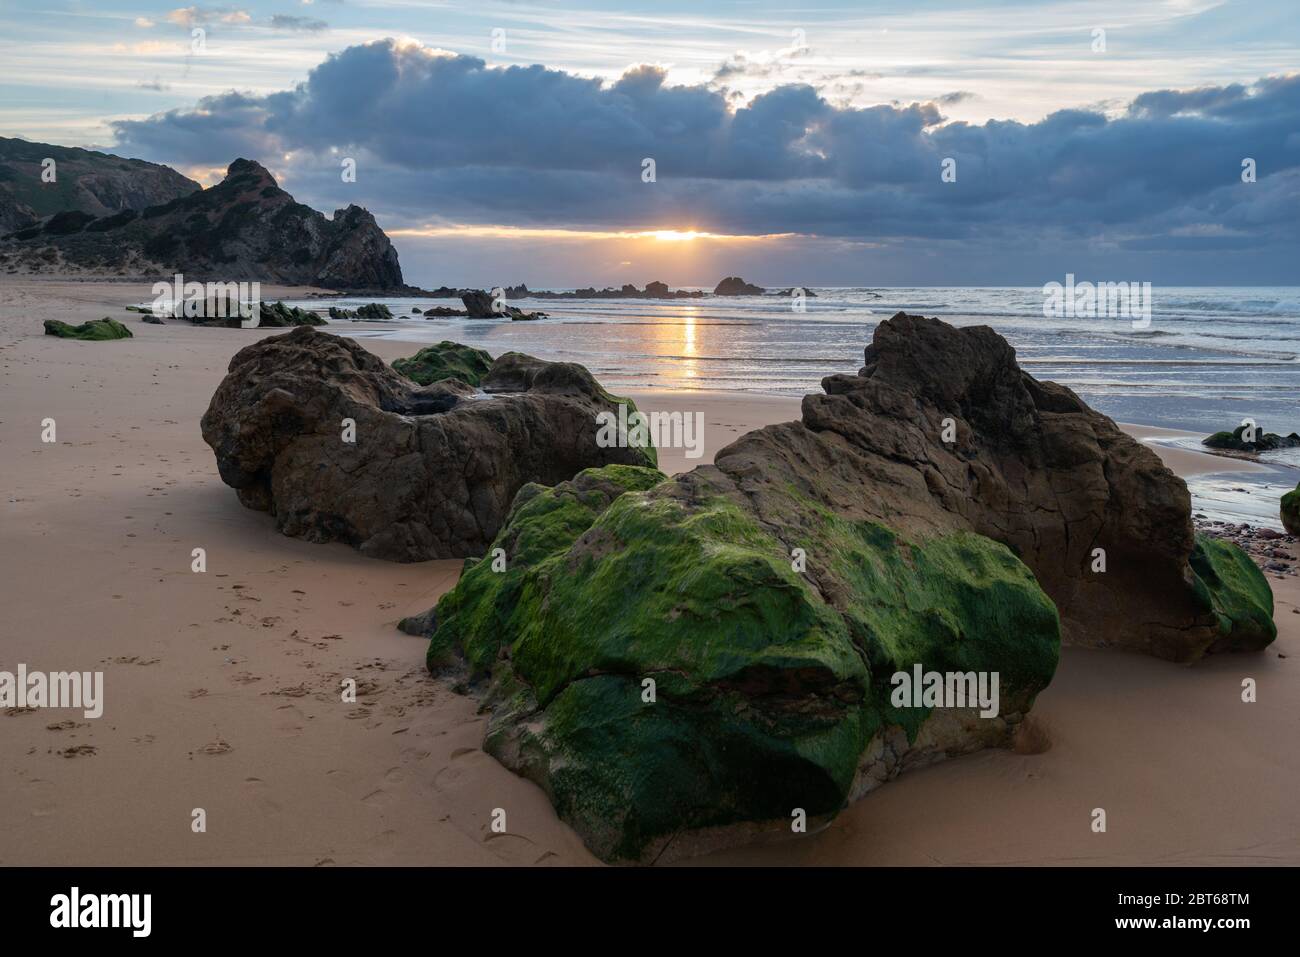 Spiaggia Praia do amado al tramonto in Costa Vicentina, Portogallo Foto Stock